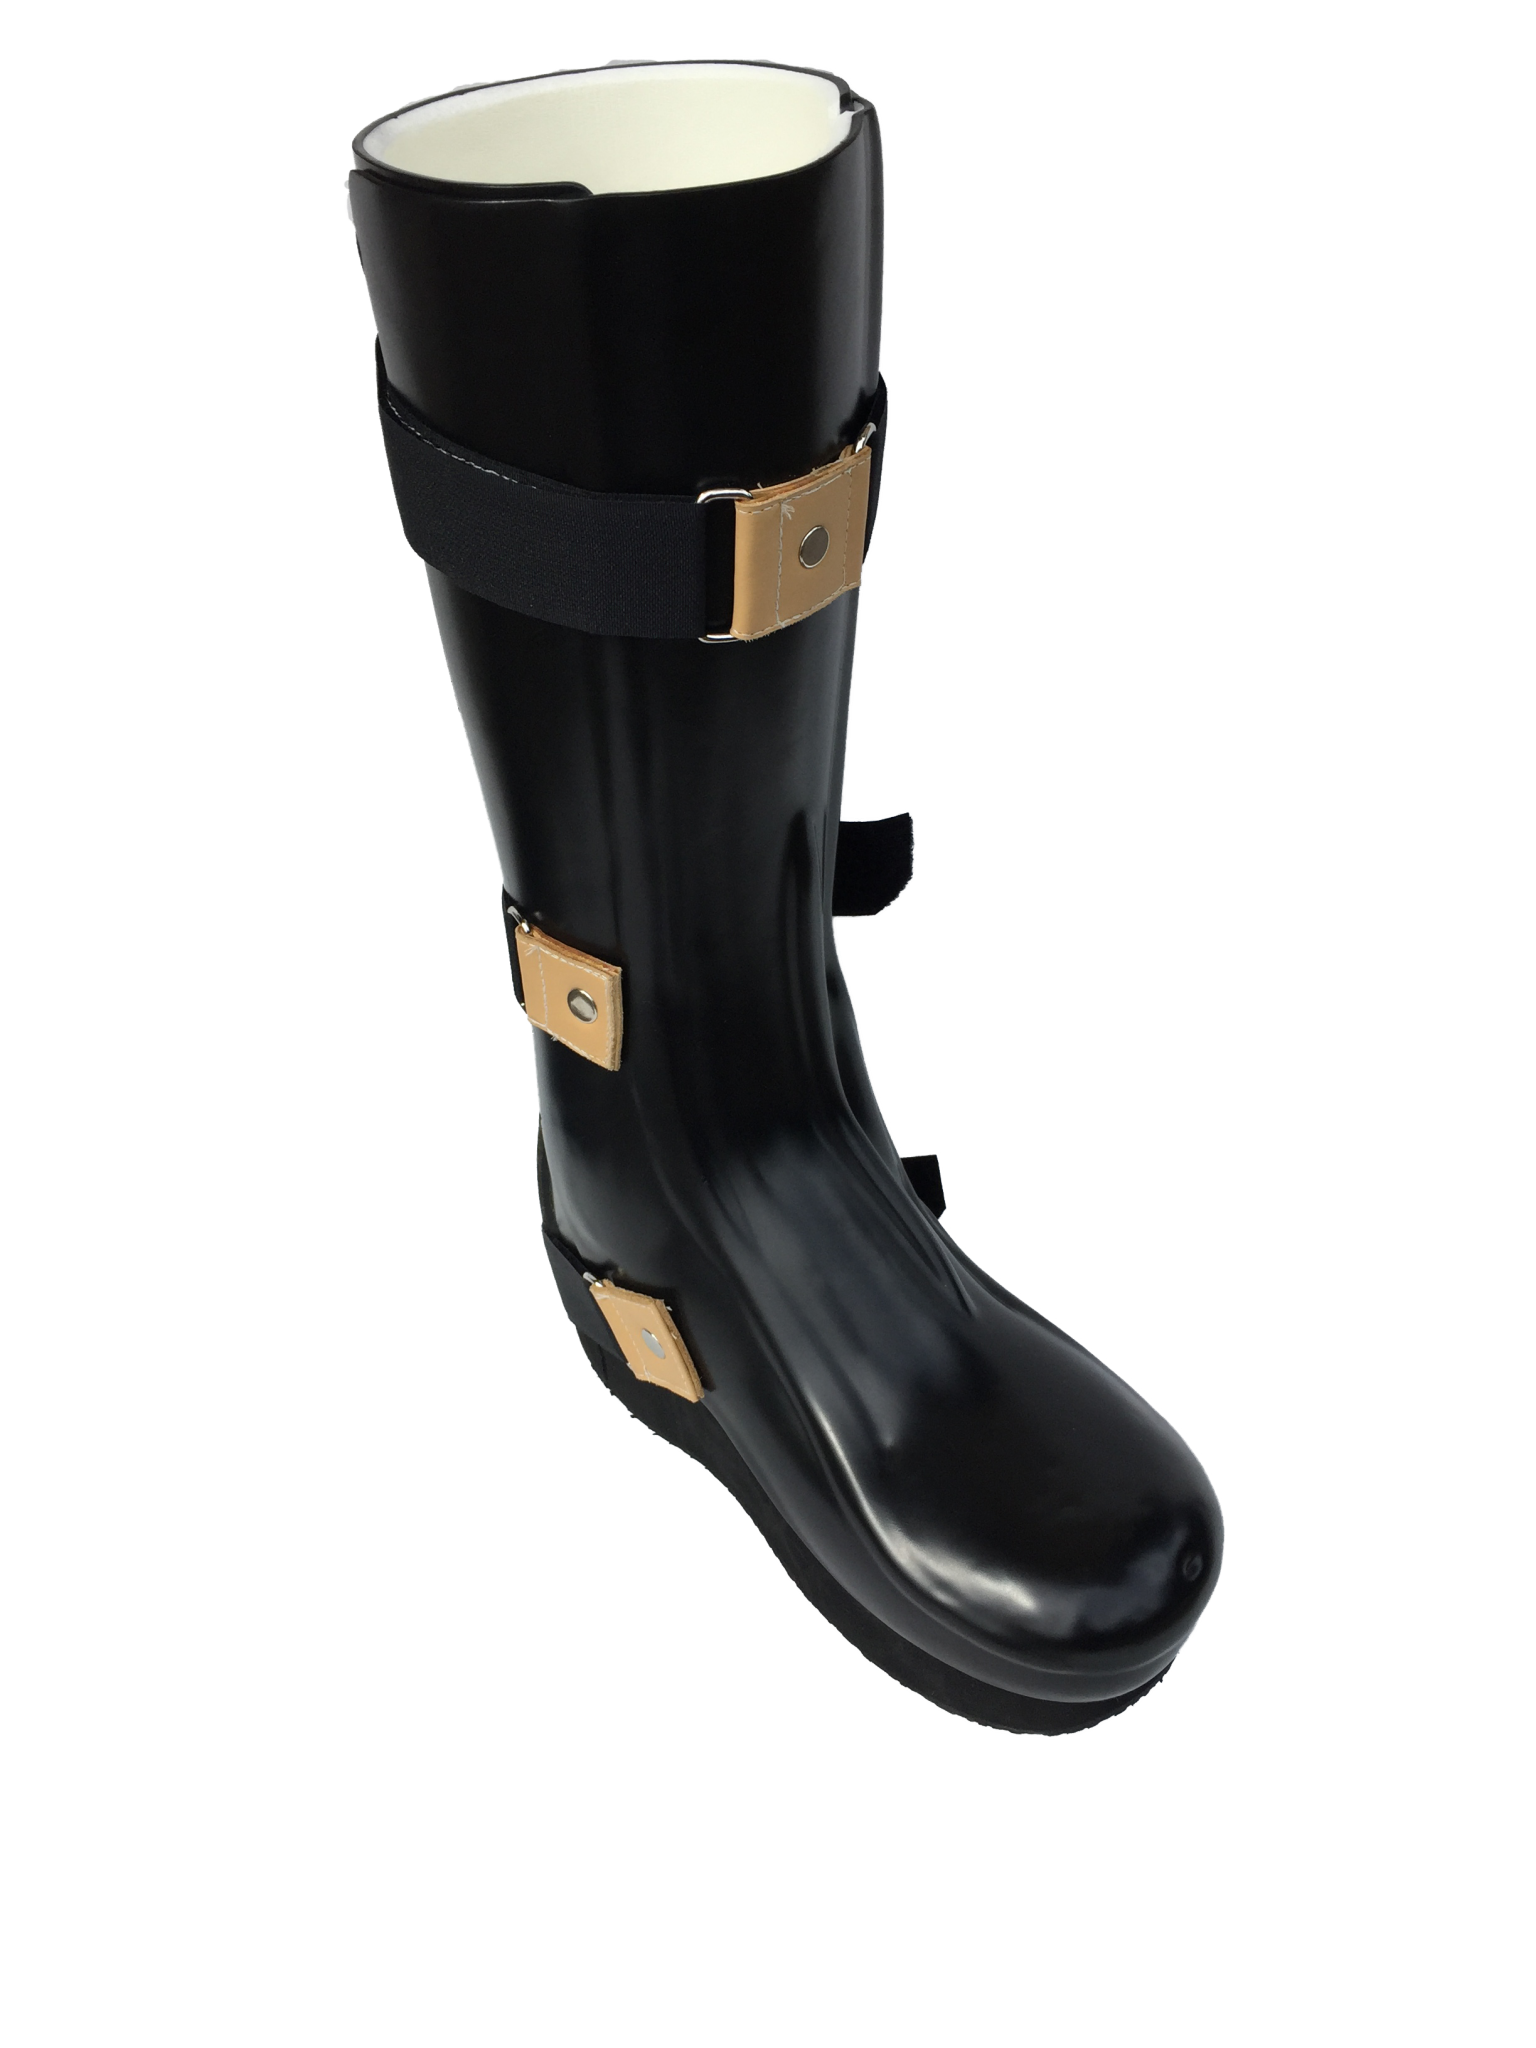 orthotic rain boots